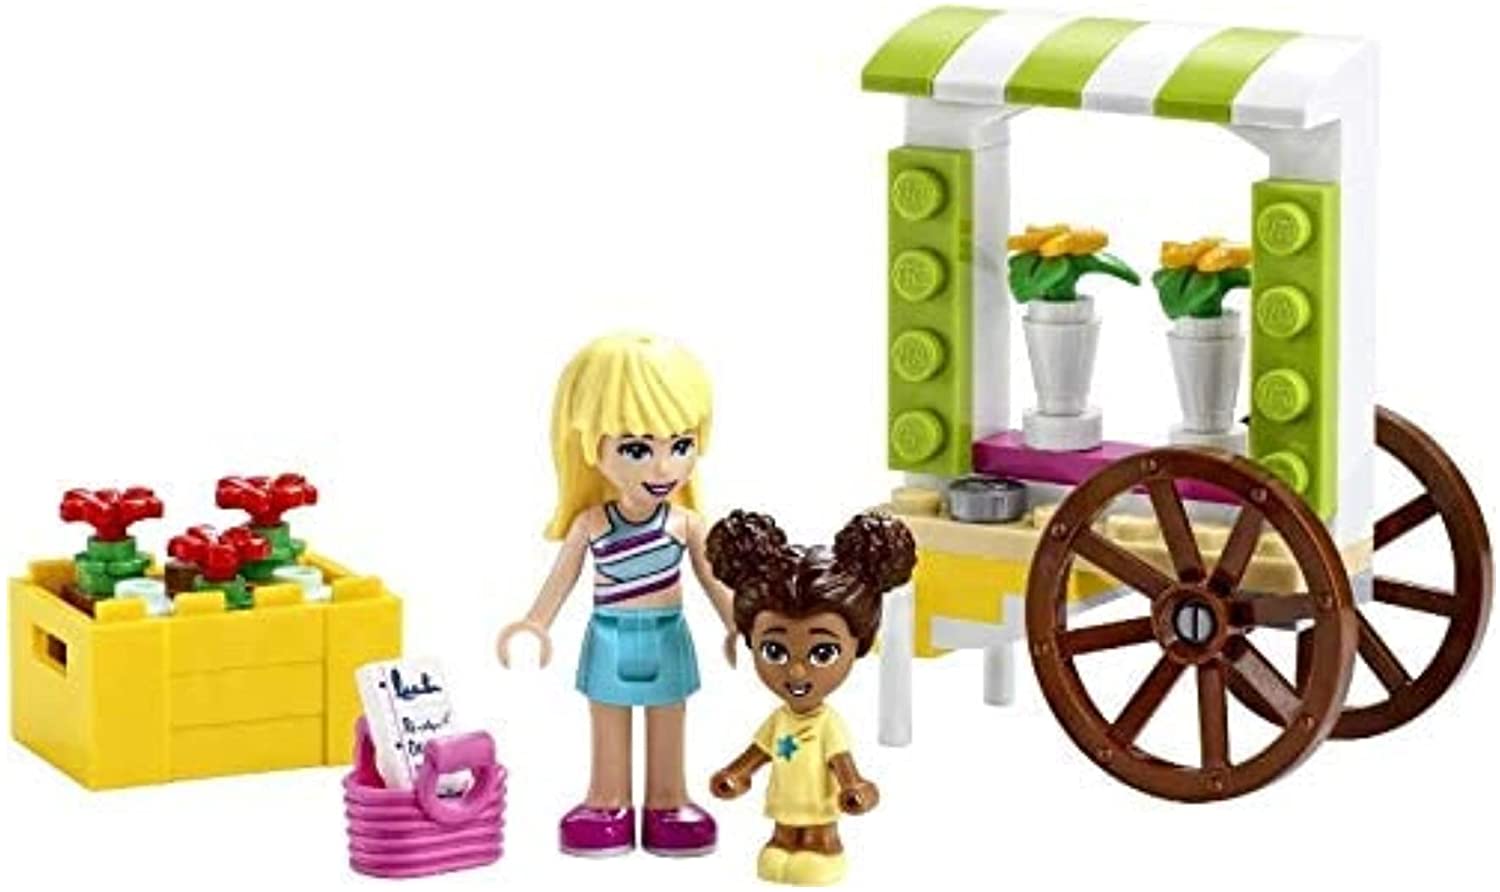 LEGO 30413 Blumenwagen, 2 Mini Figuren